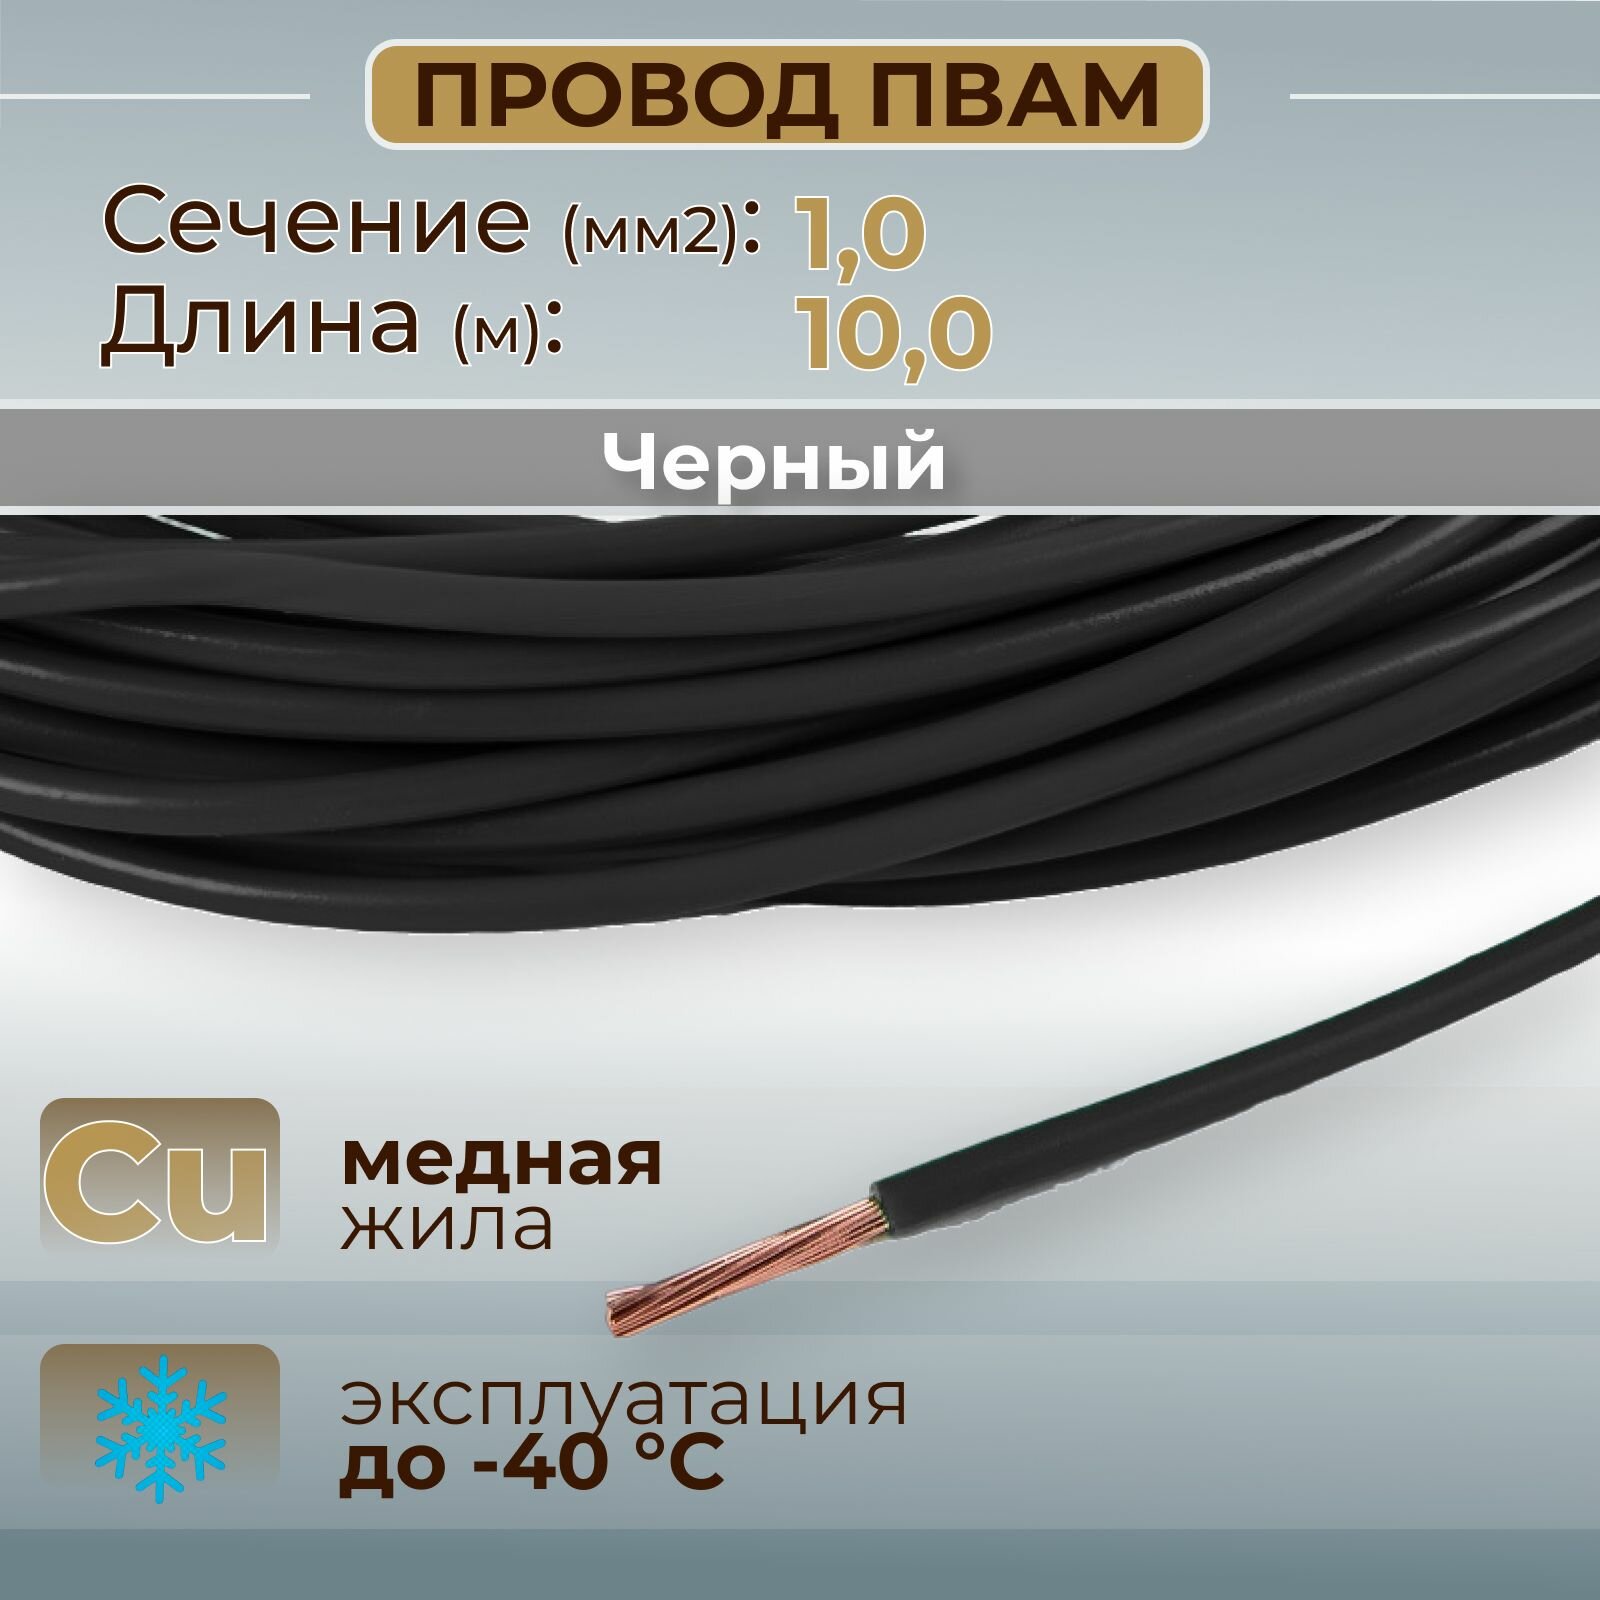 Провода автомобильные пвам цвет черный с сечением 10 кв. мм длина 10м